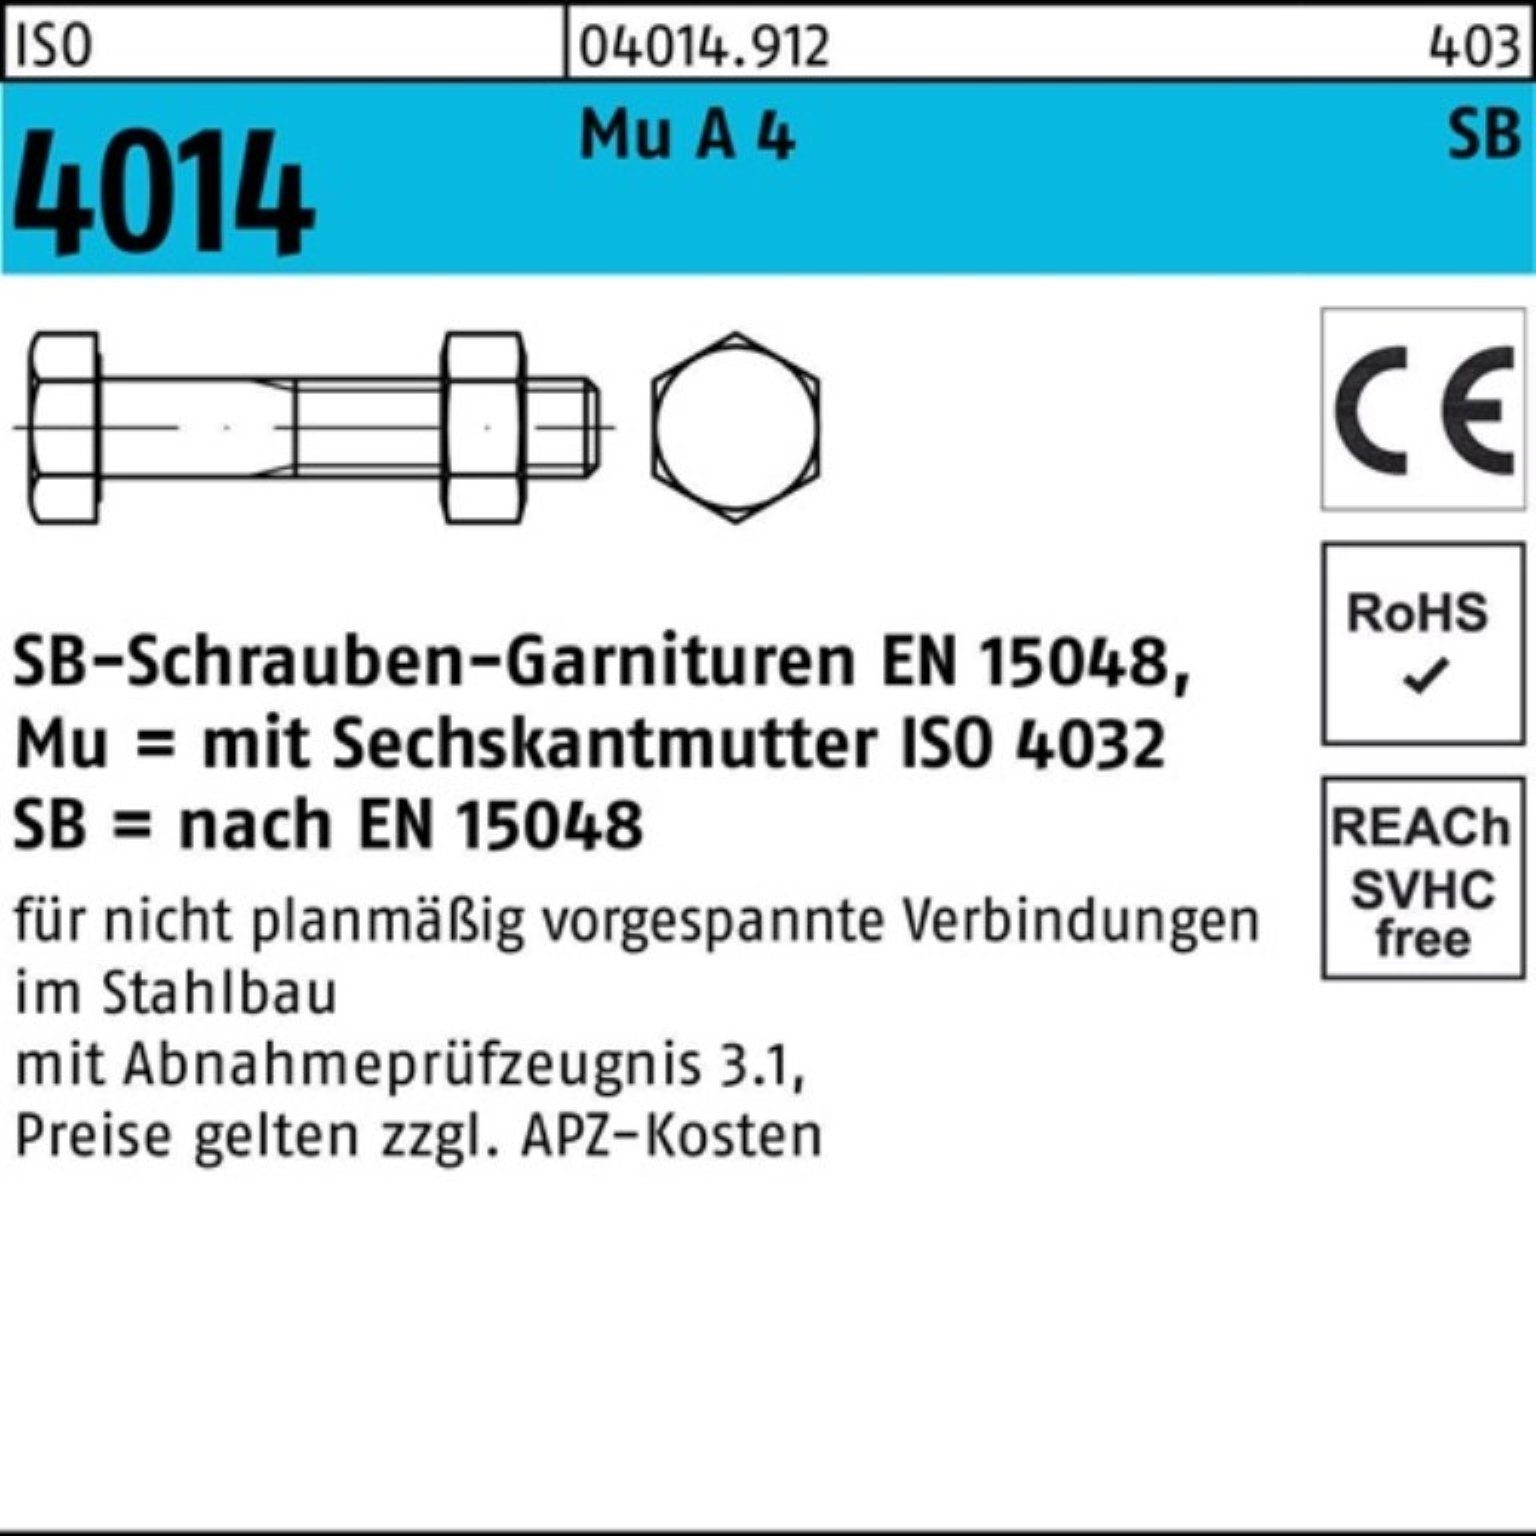 Schaft/Mutter 4 Sechskantschraube SB A M16x Bufab 4014 90 25 Sechskantschraube 100er Pack ISO